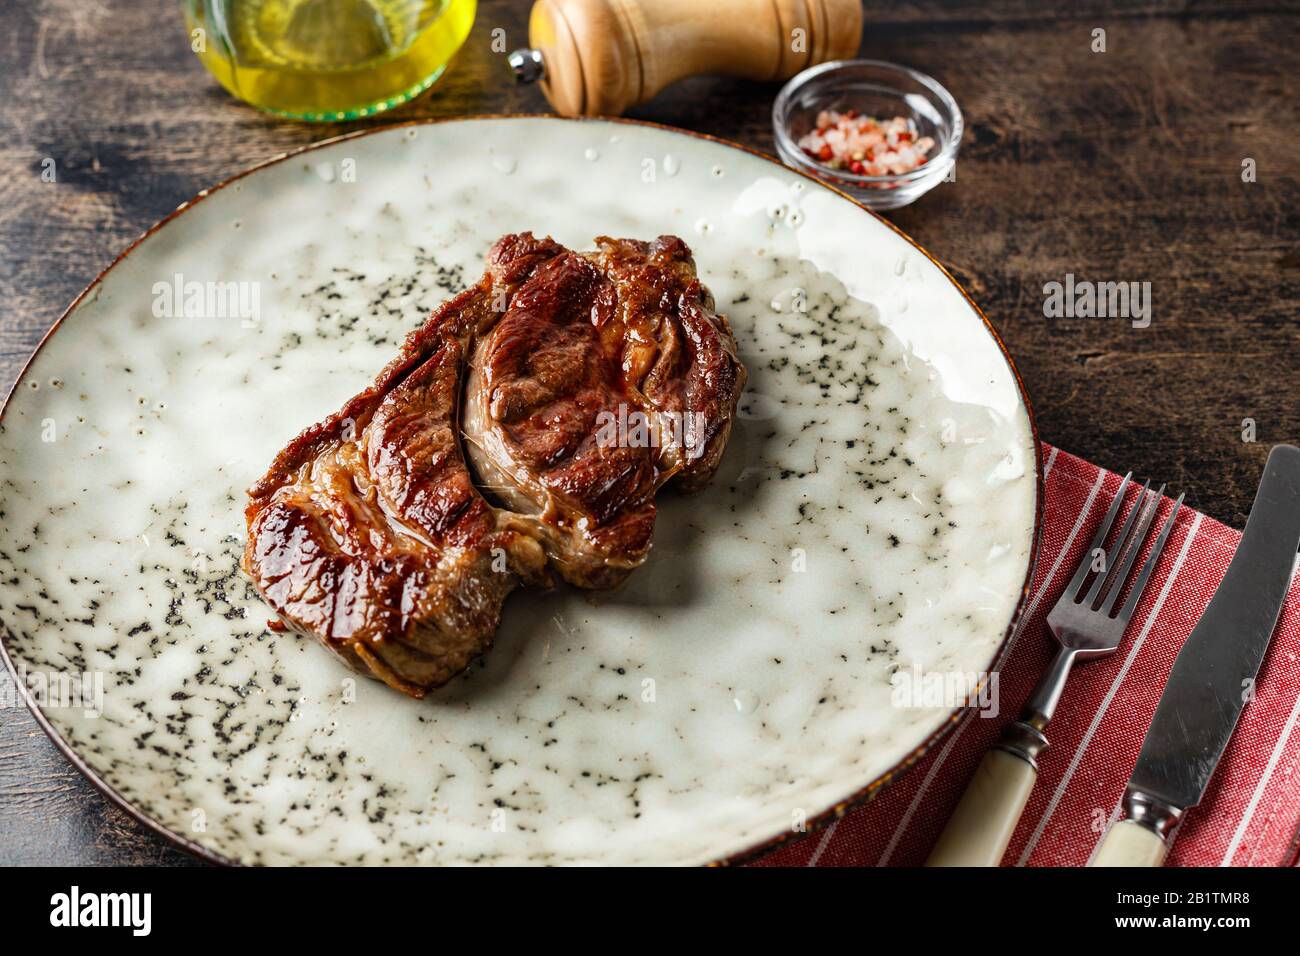 Bifteck de bœuf grillé, bifteck de la Chuck Black Angus sur un plat sur une table en bois Banque D'Images